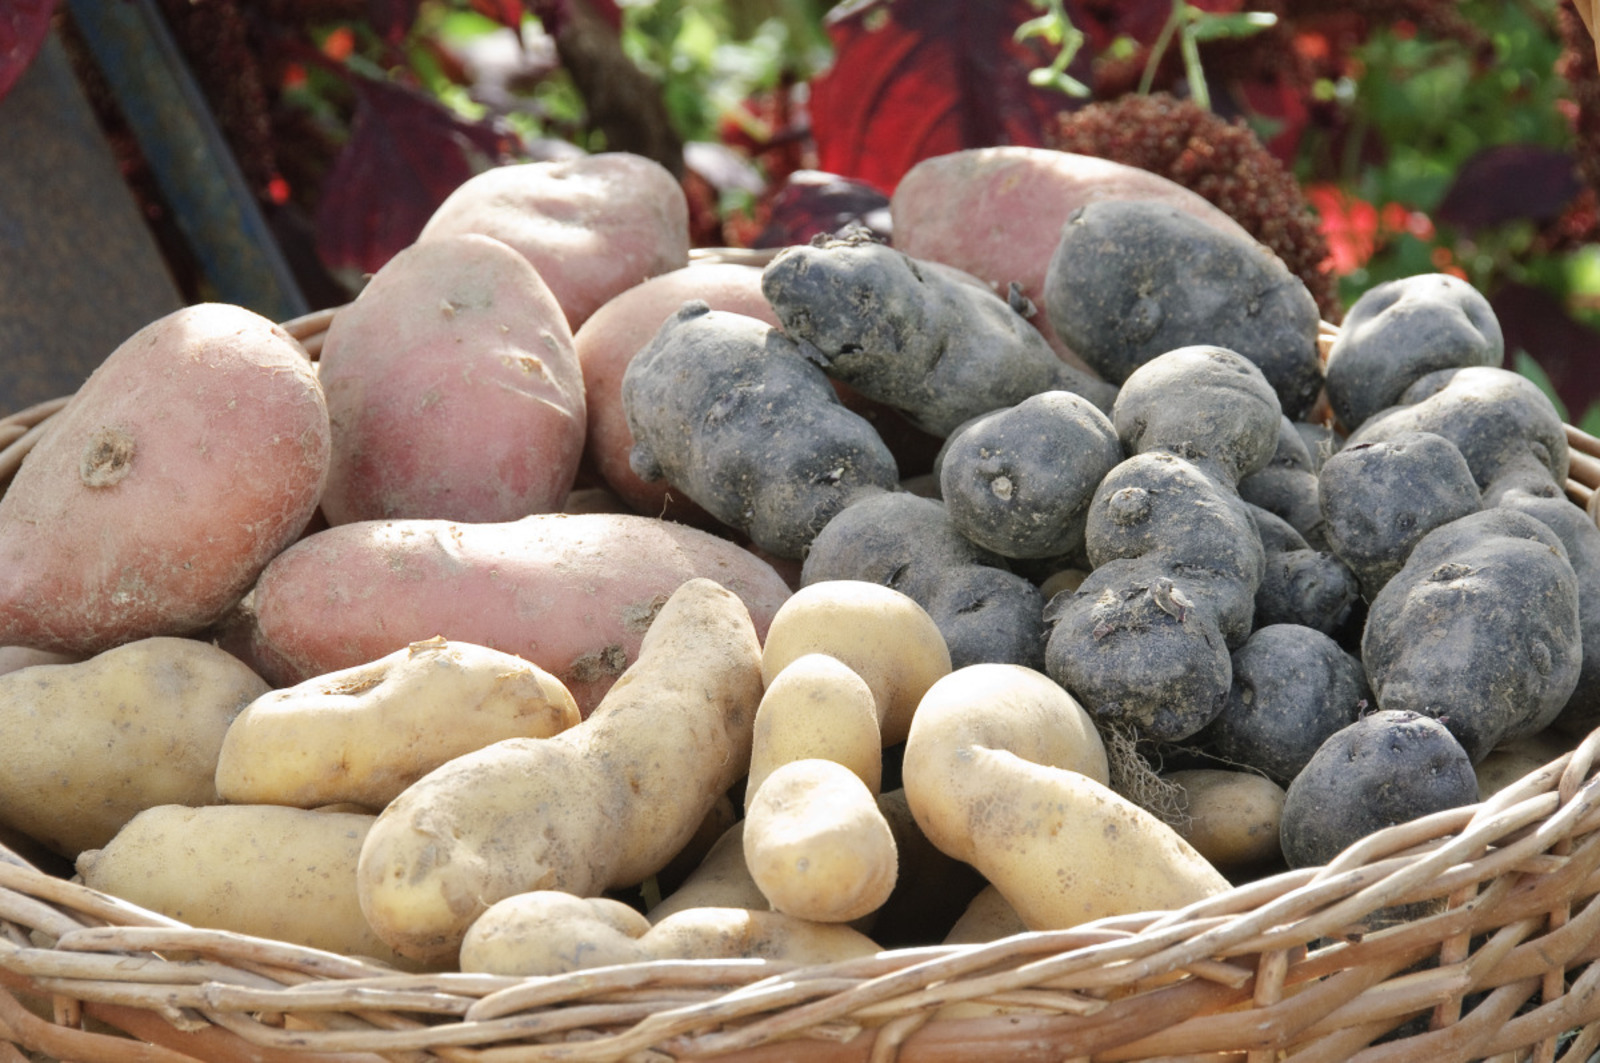 Pommes de terre 'Désirée', 'Vitelotte' et 'Ratte'. © F. Marre, Rustica